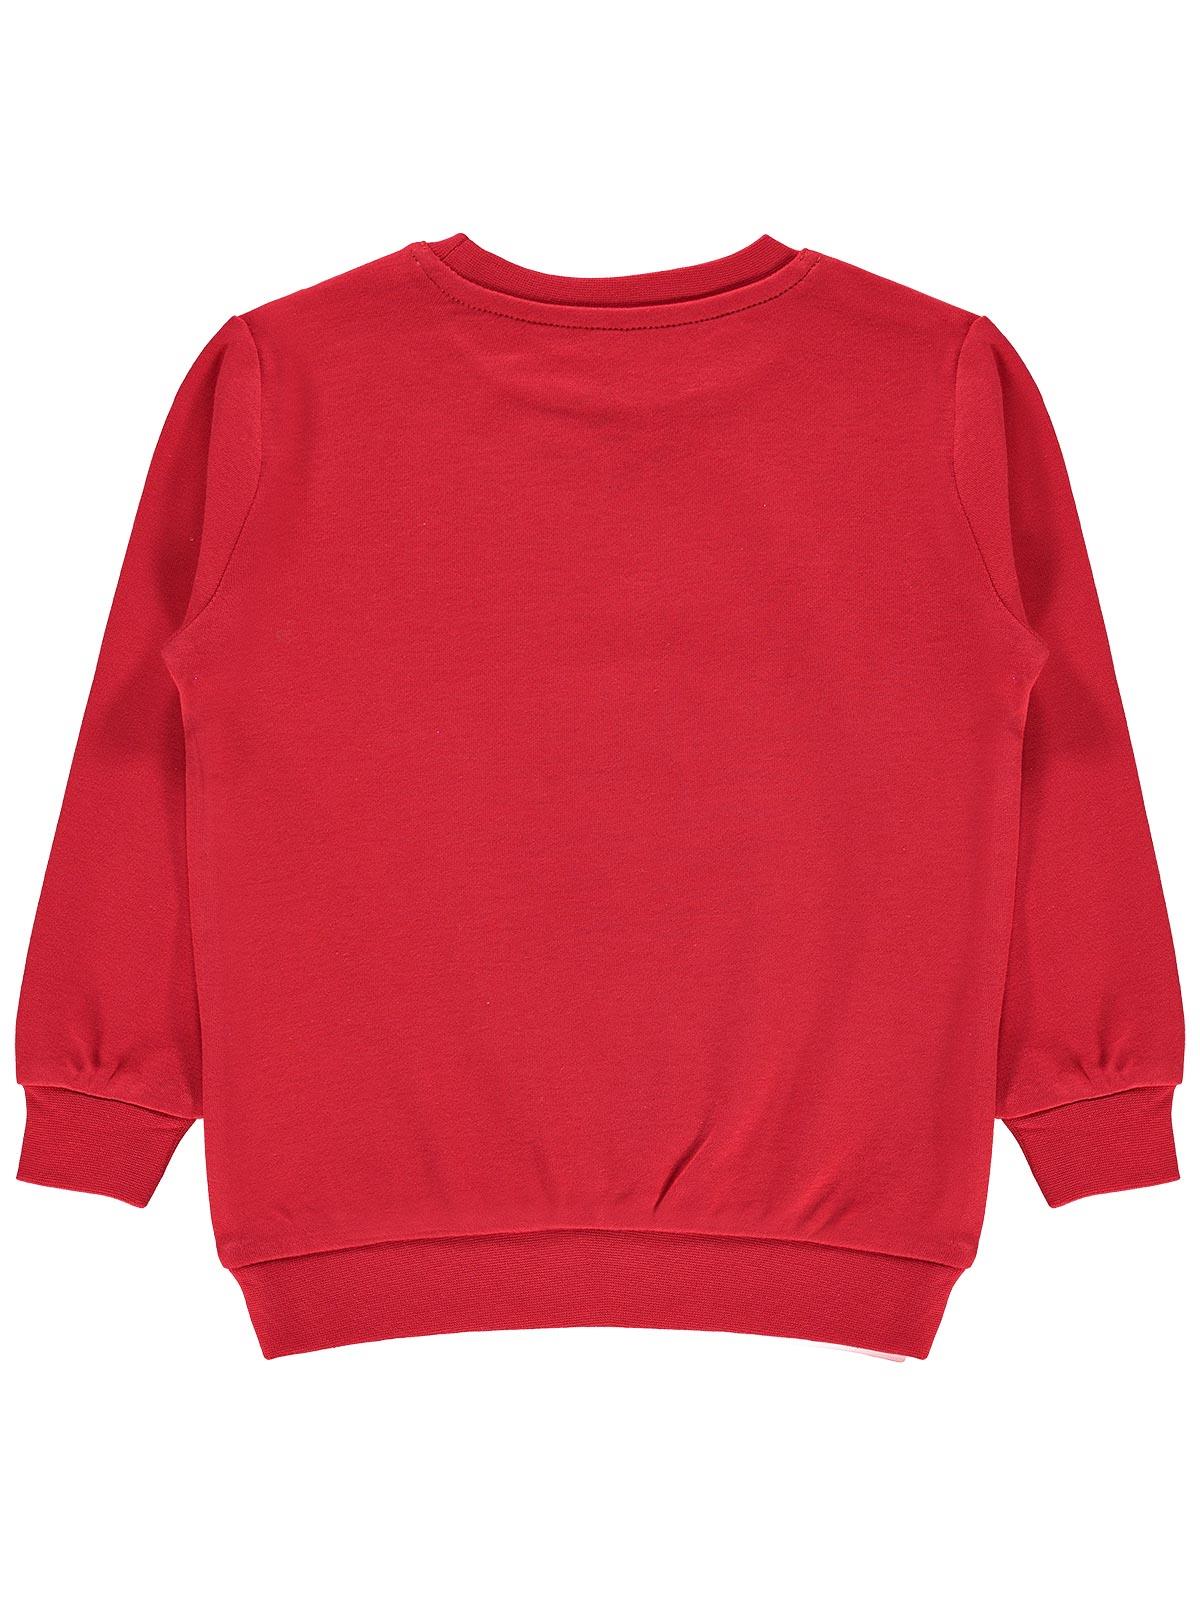 Cvl Kız Çocuk Sweatshirt 2-5 Yaş Kırmızı